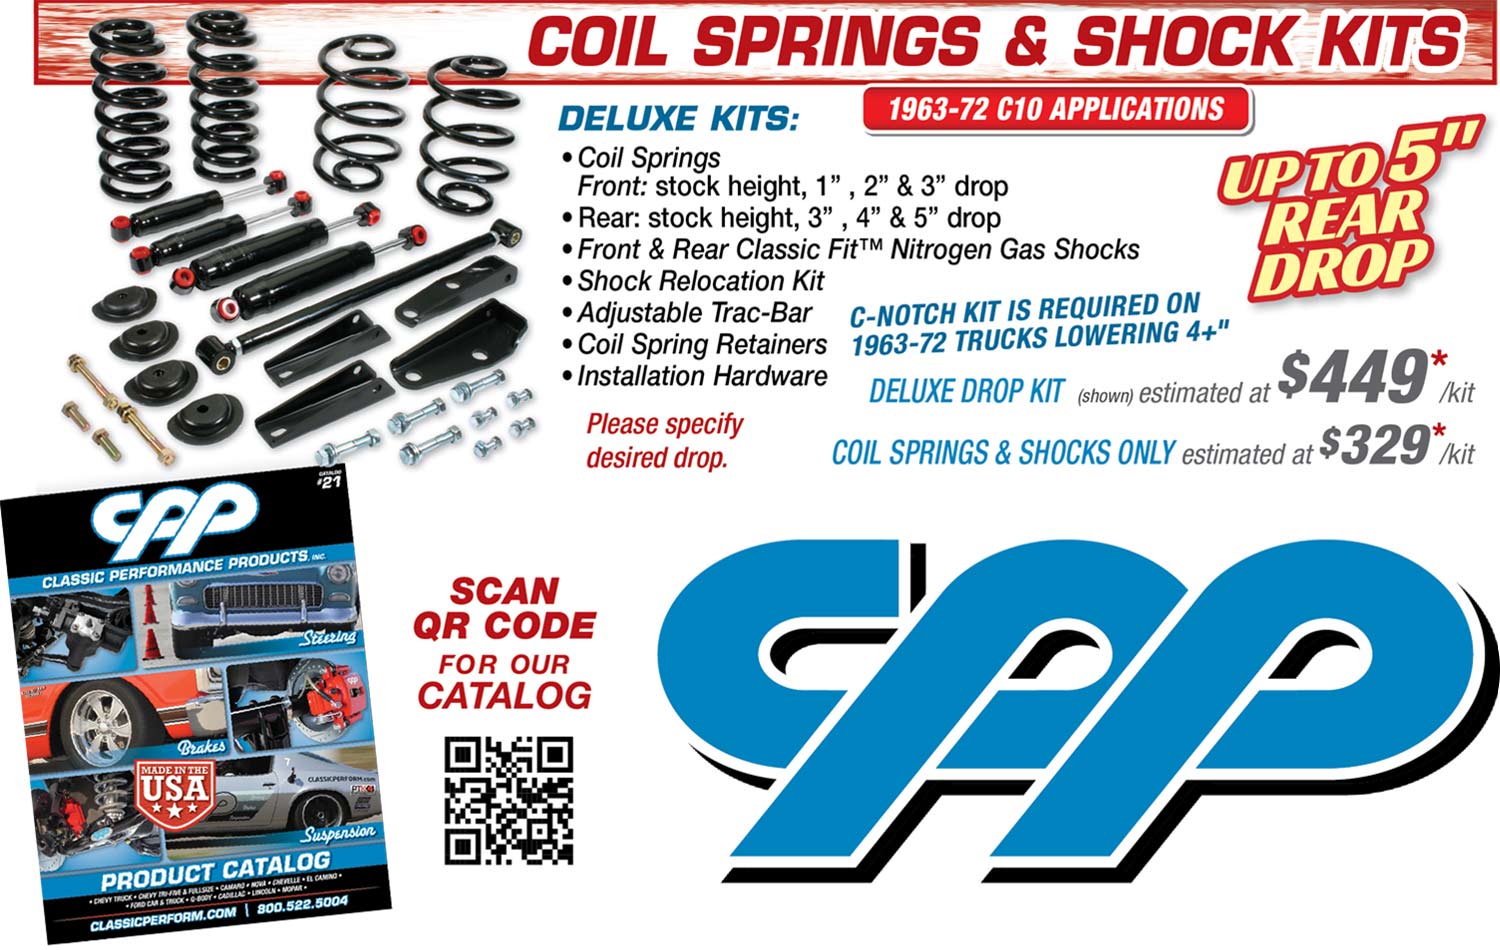 Coil Springs & Shock Kits